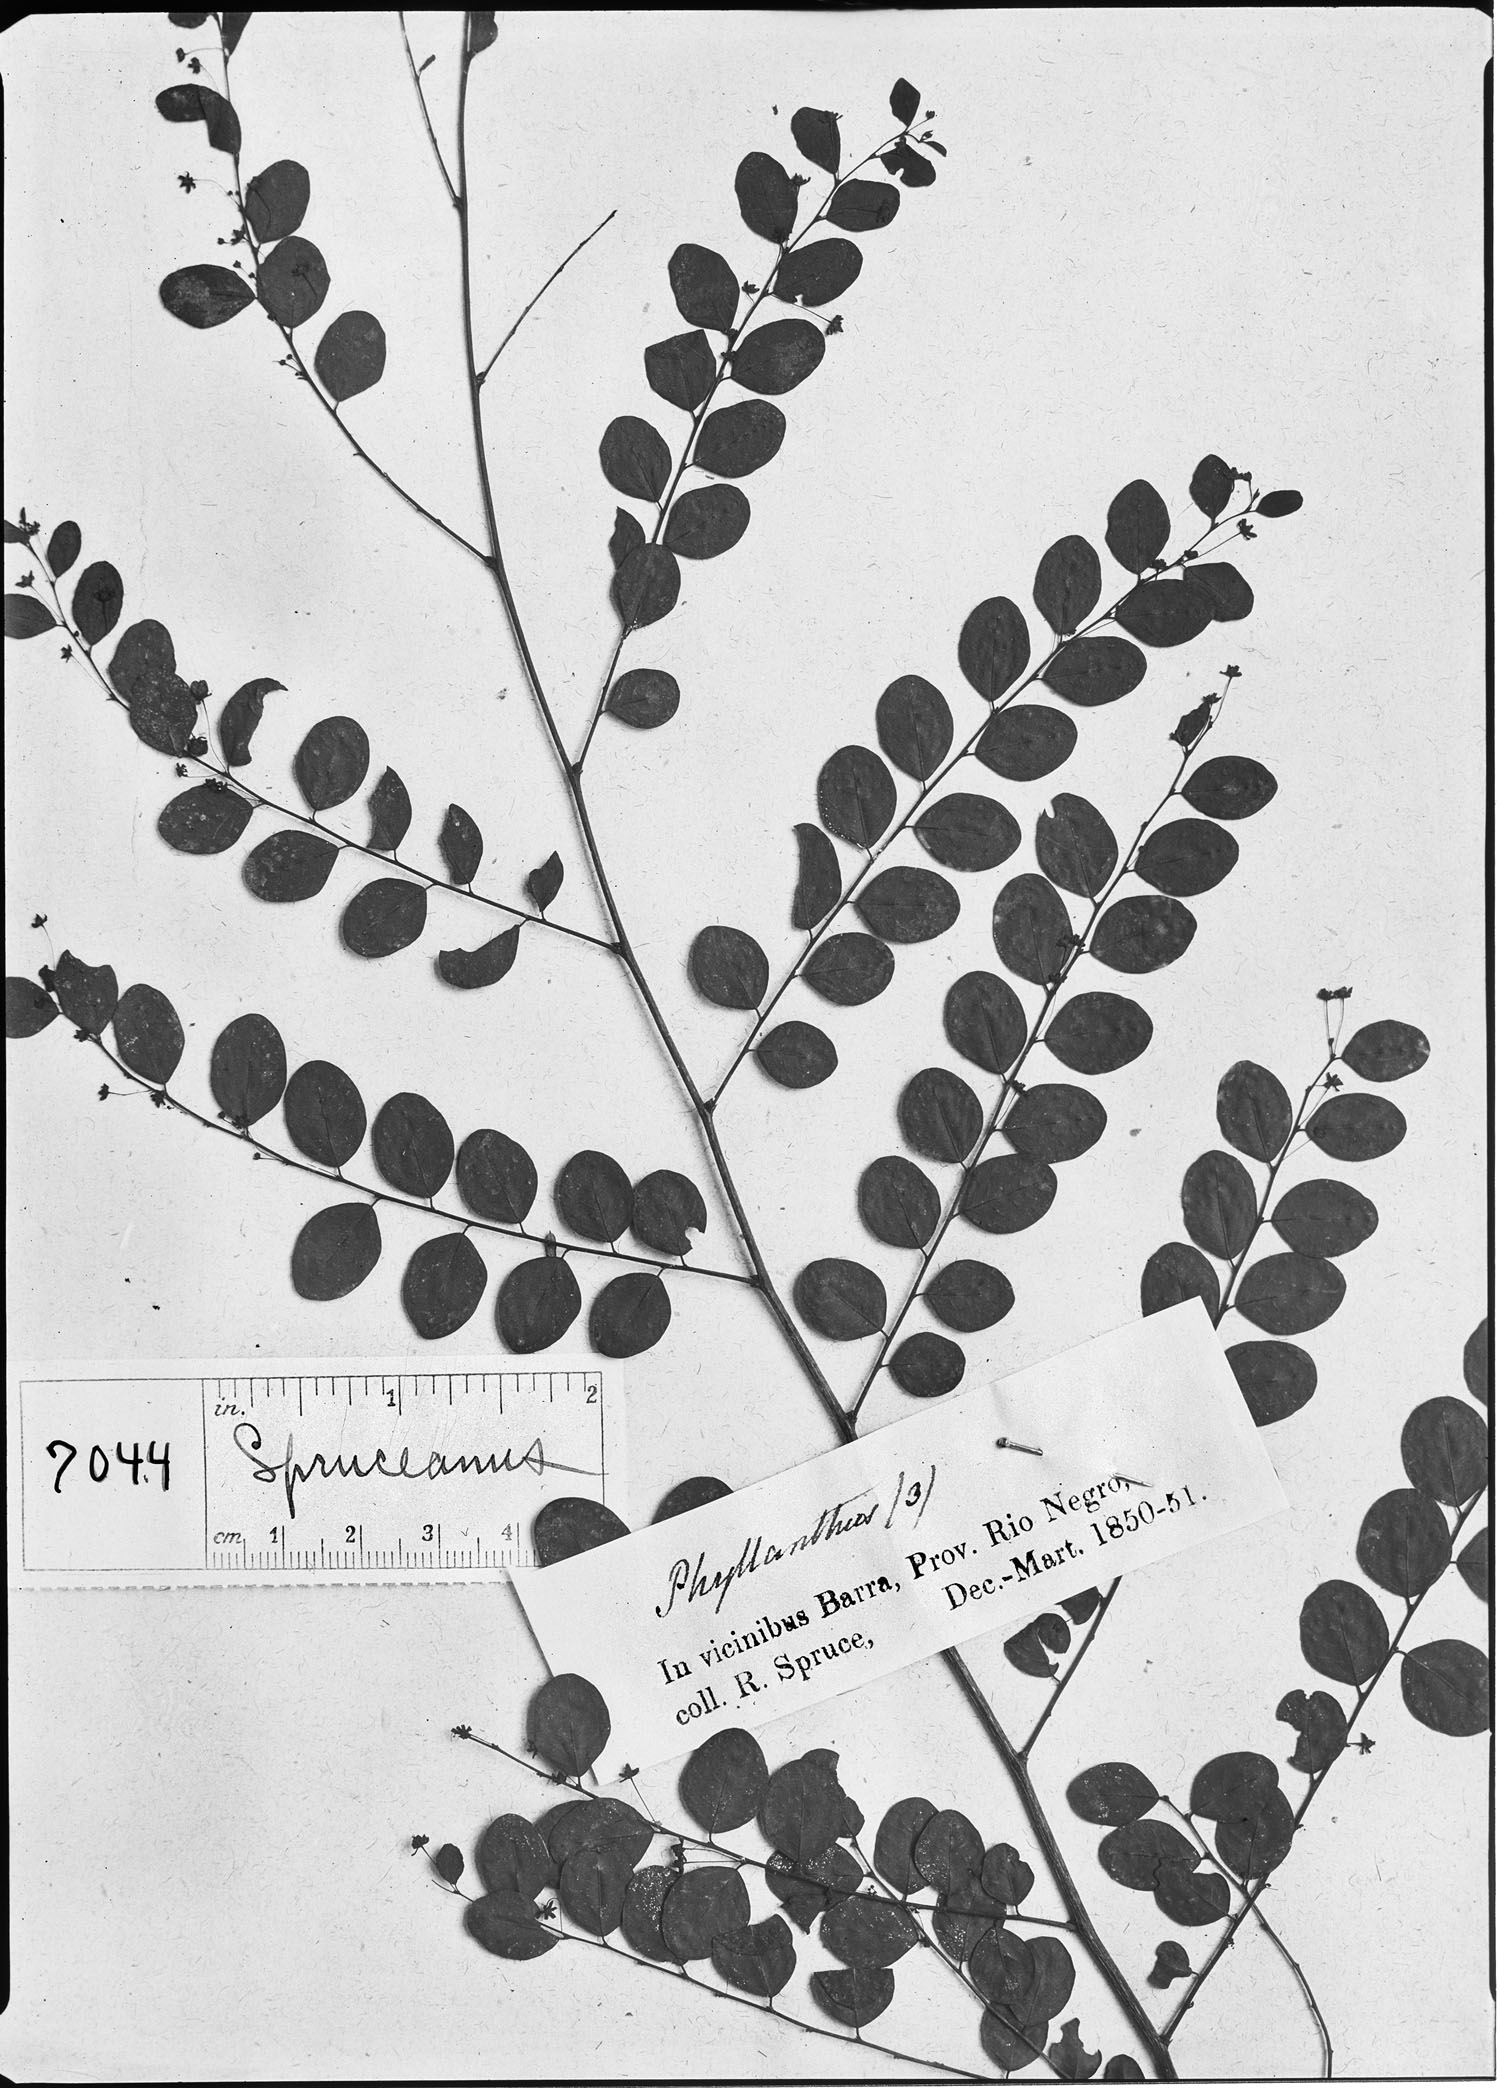 Phyllanthus spruceanus image